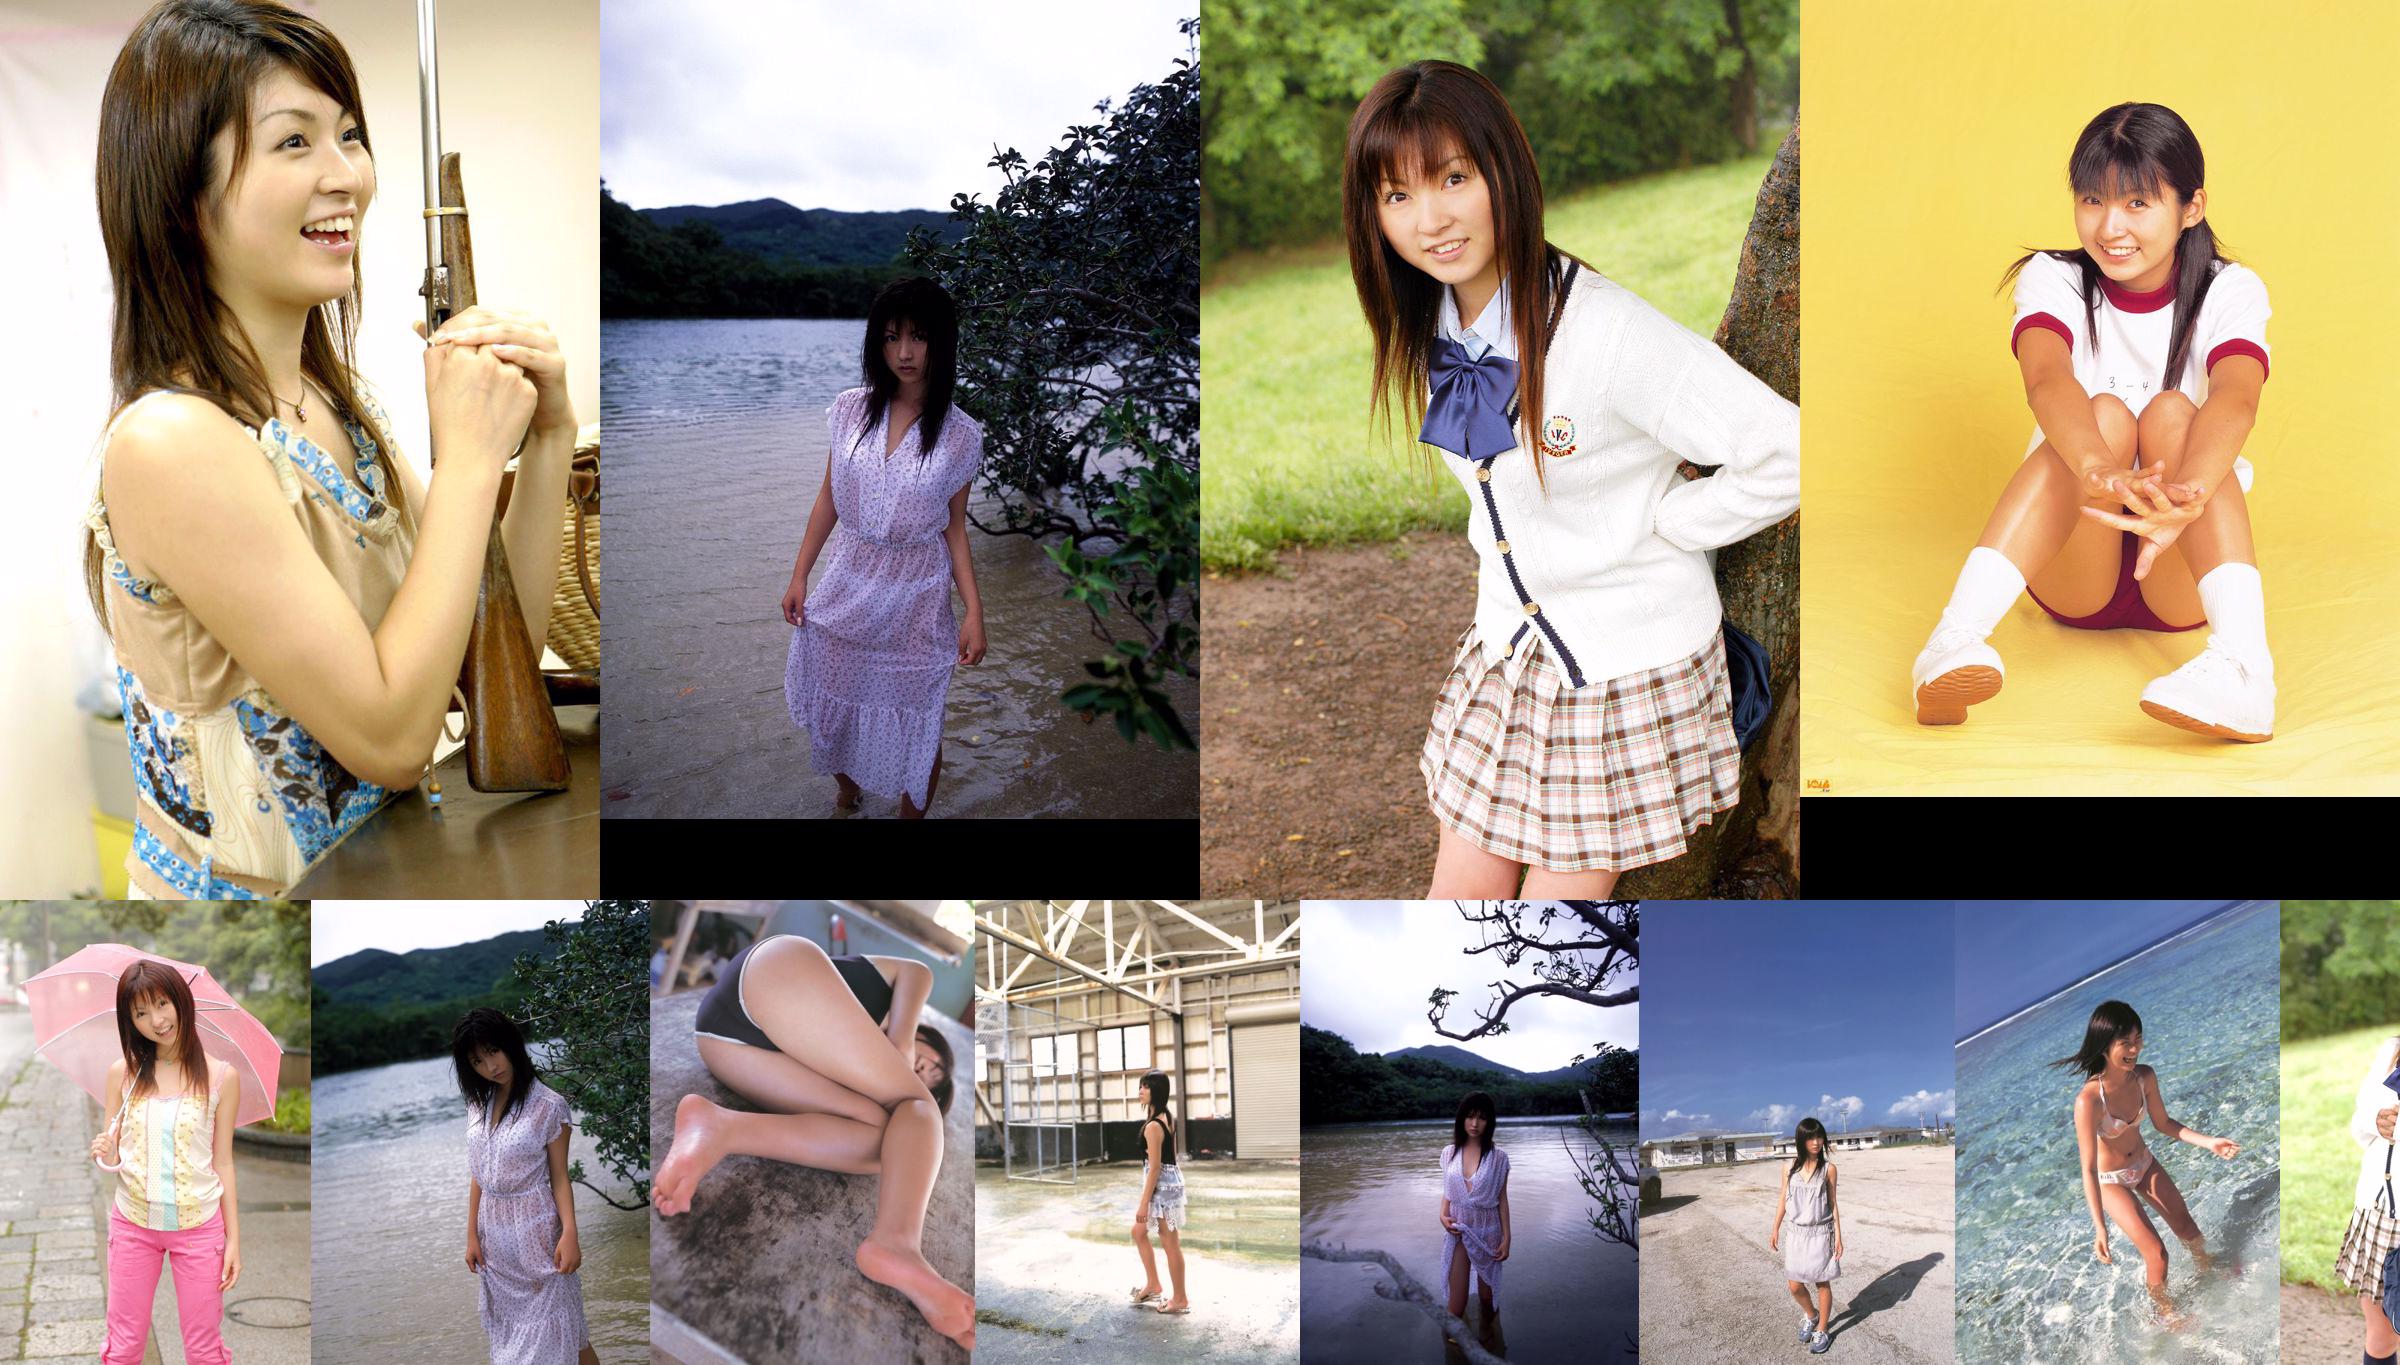 Sakuragi Mutsuko "GOOD-BYE SISTER" No.5d9eff Page 3